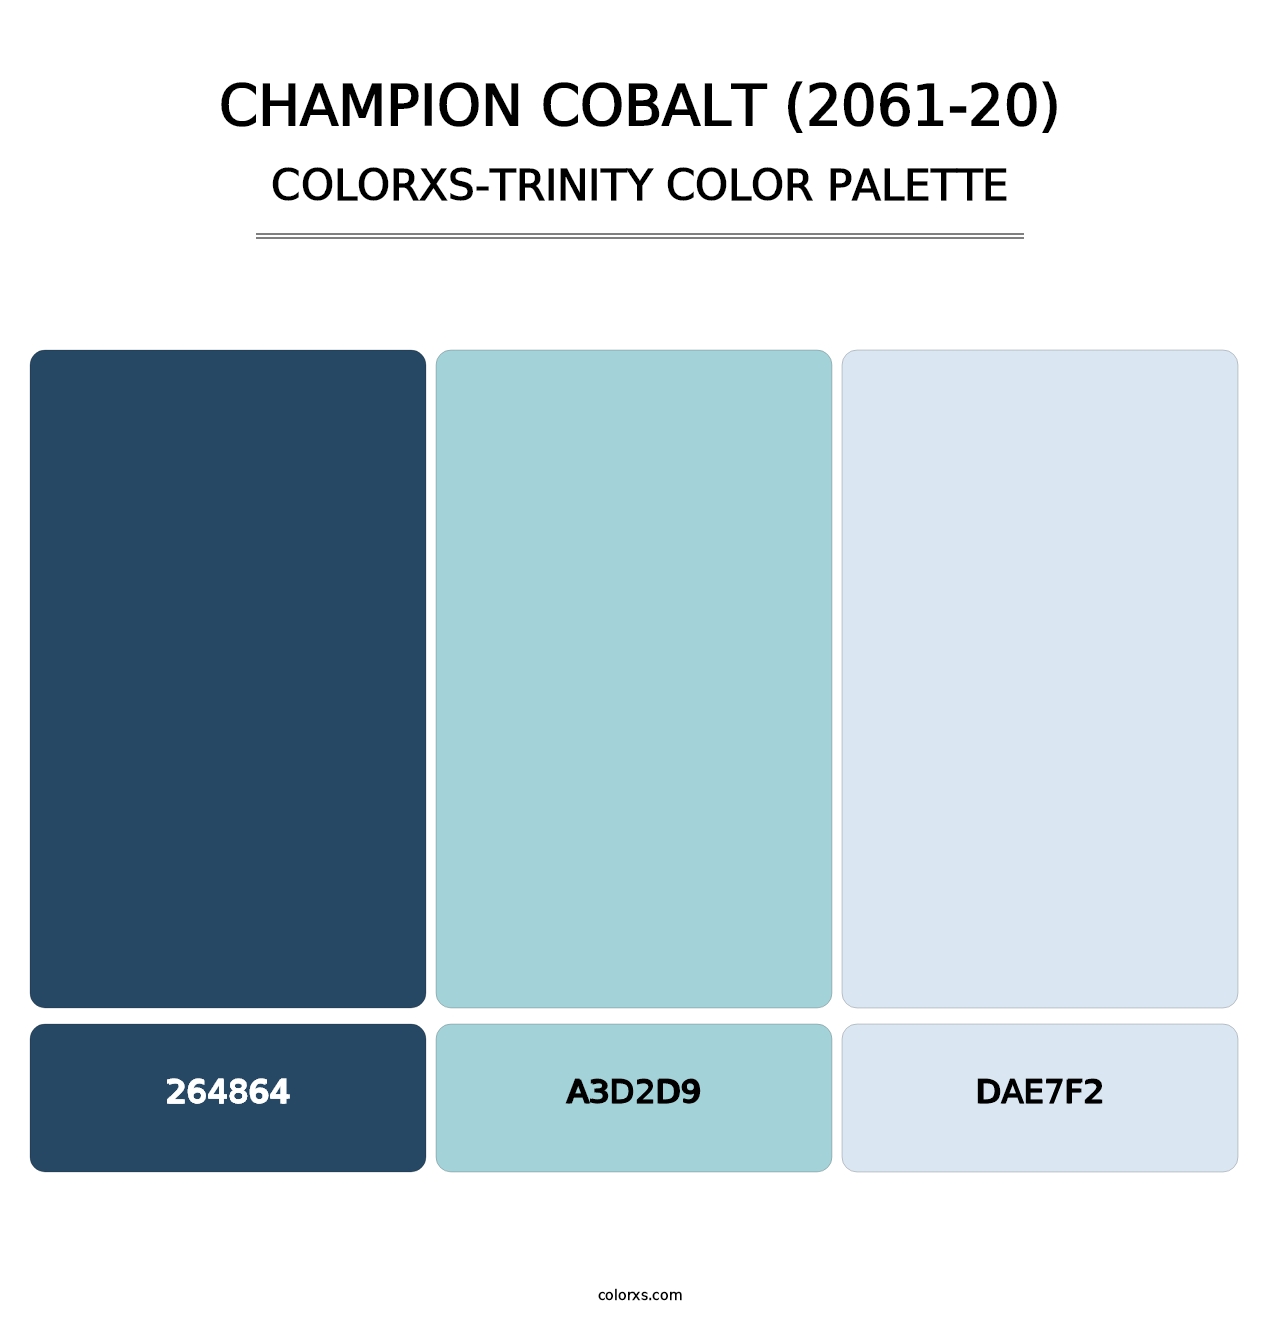 Champion Cobalt (2061-20) - Colorxs Trinity Palette